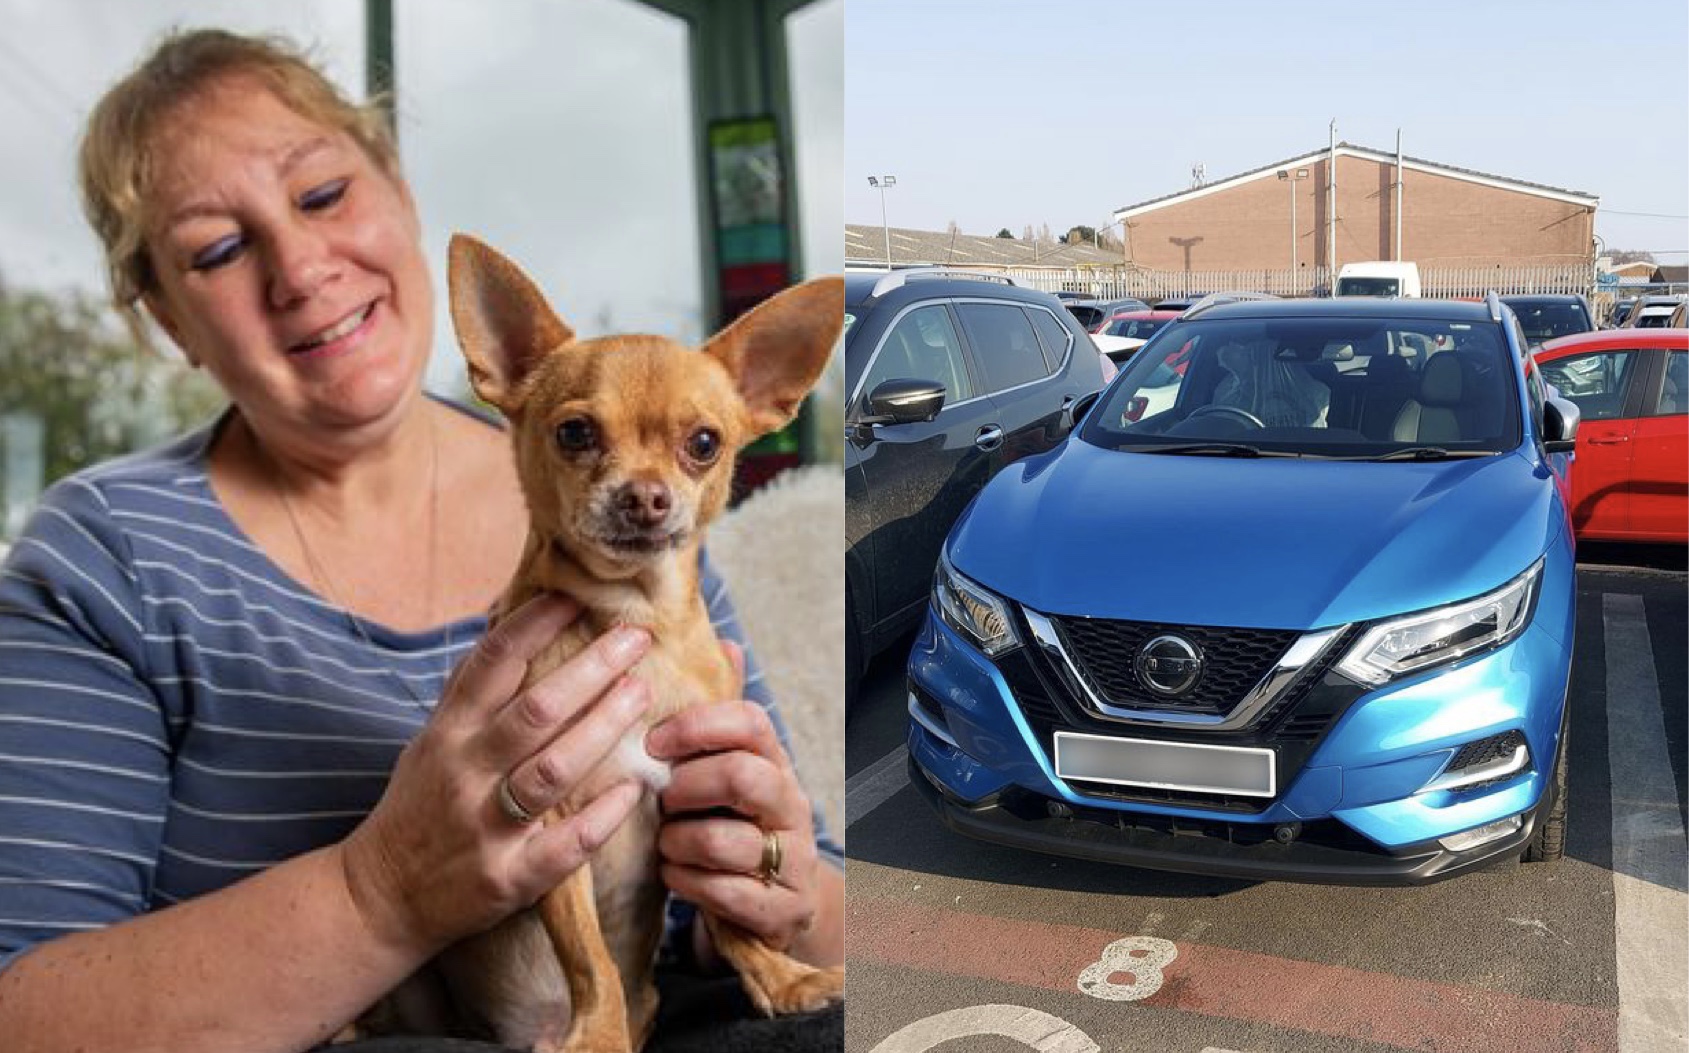 Gruaja shet makinën, shpenzon 17 mijë £ për t’i shpëtuar jetën qenit të saj